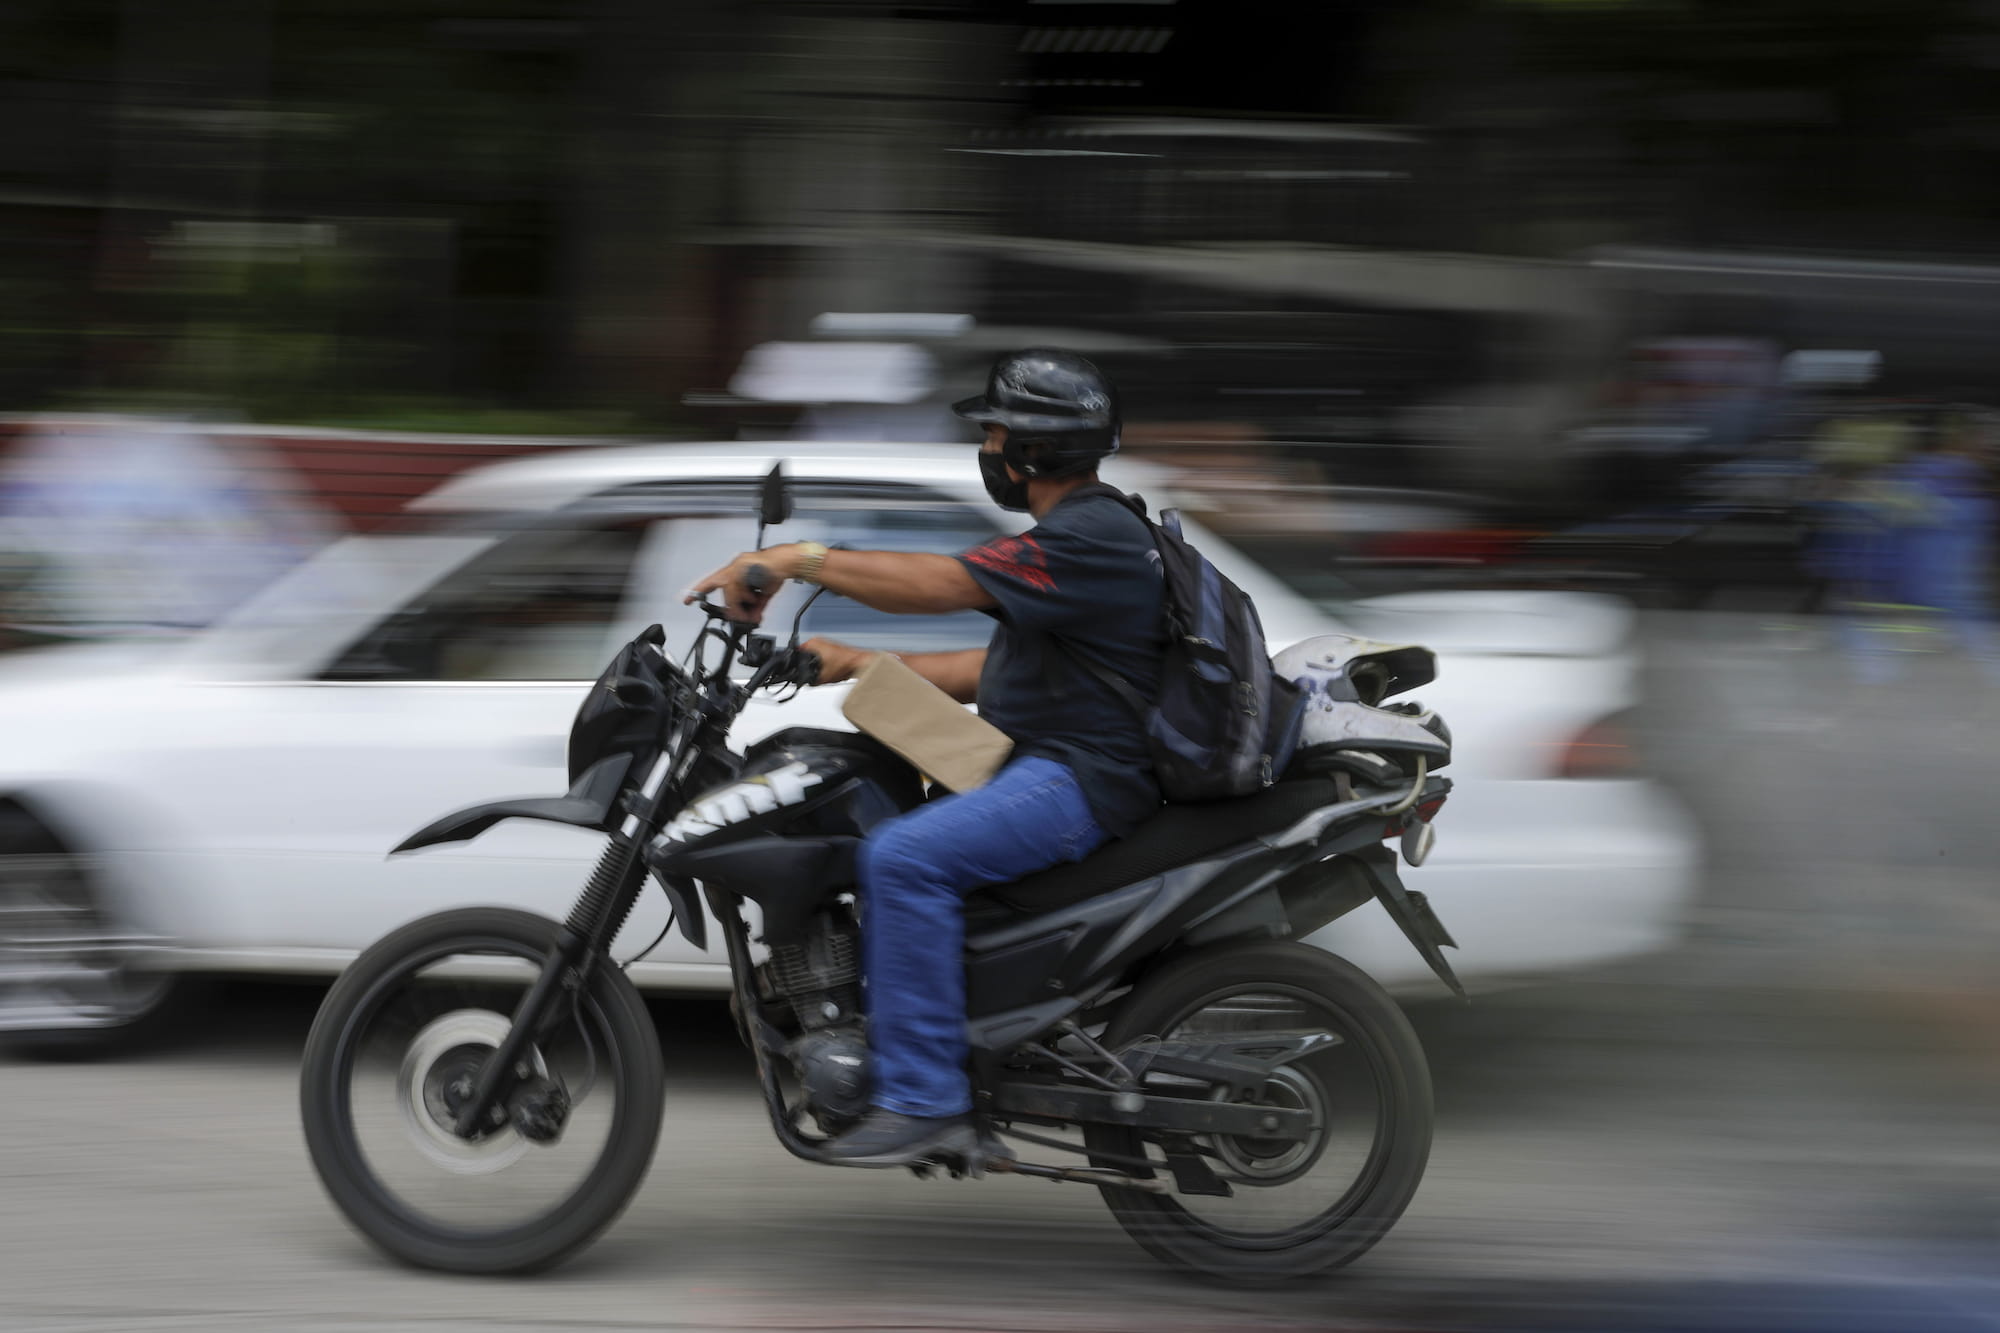 Sin pagos por depreciación de sus motocicletas, los grupos de motorizados  apoyan por convicción. Tegucigalpa, Honduras. Foto CC/ Jorge Cabrera.